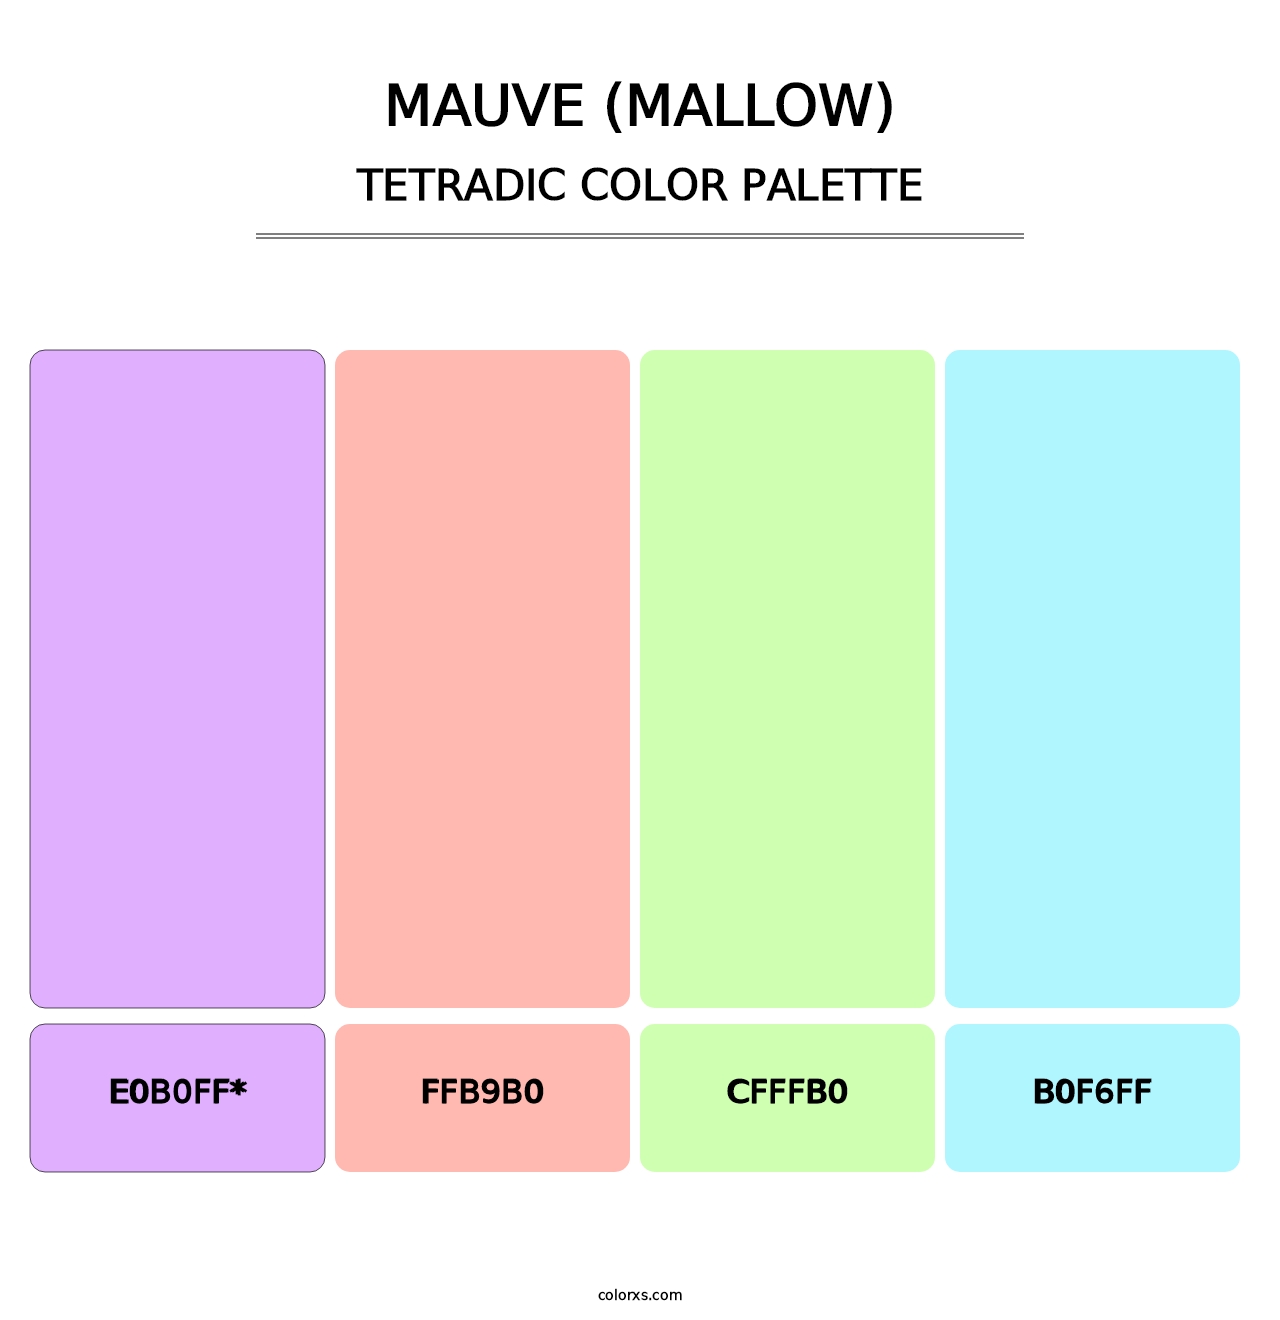 Mauve (Mallow) - Tetradic Color Palette